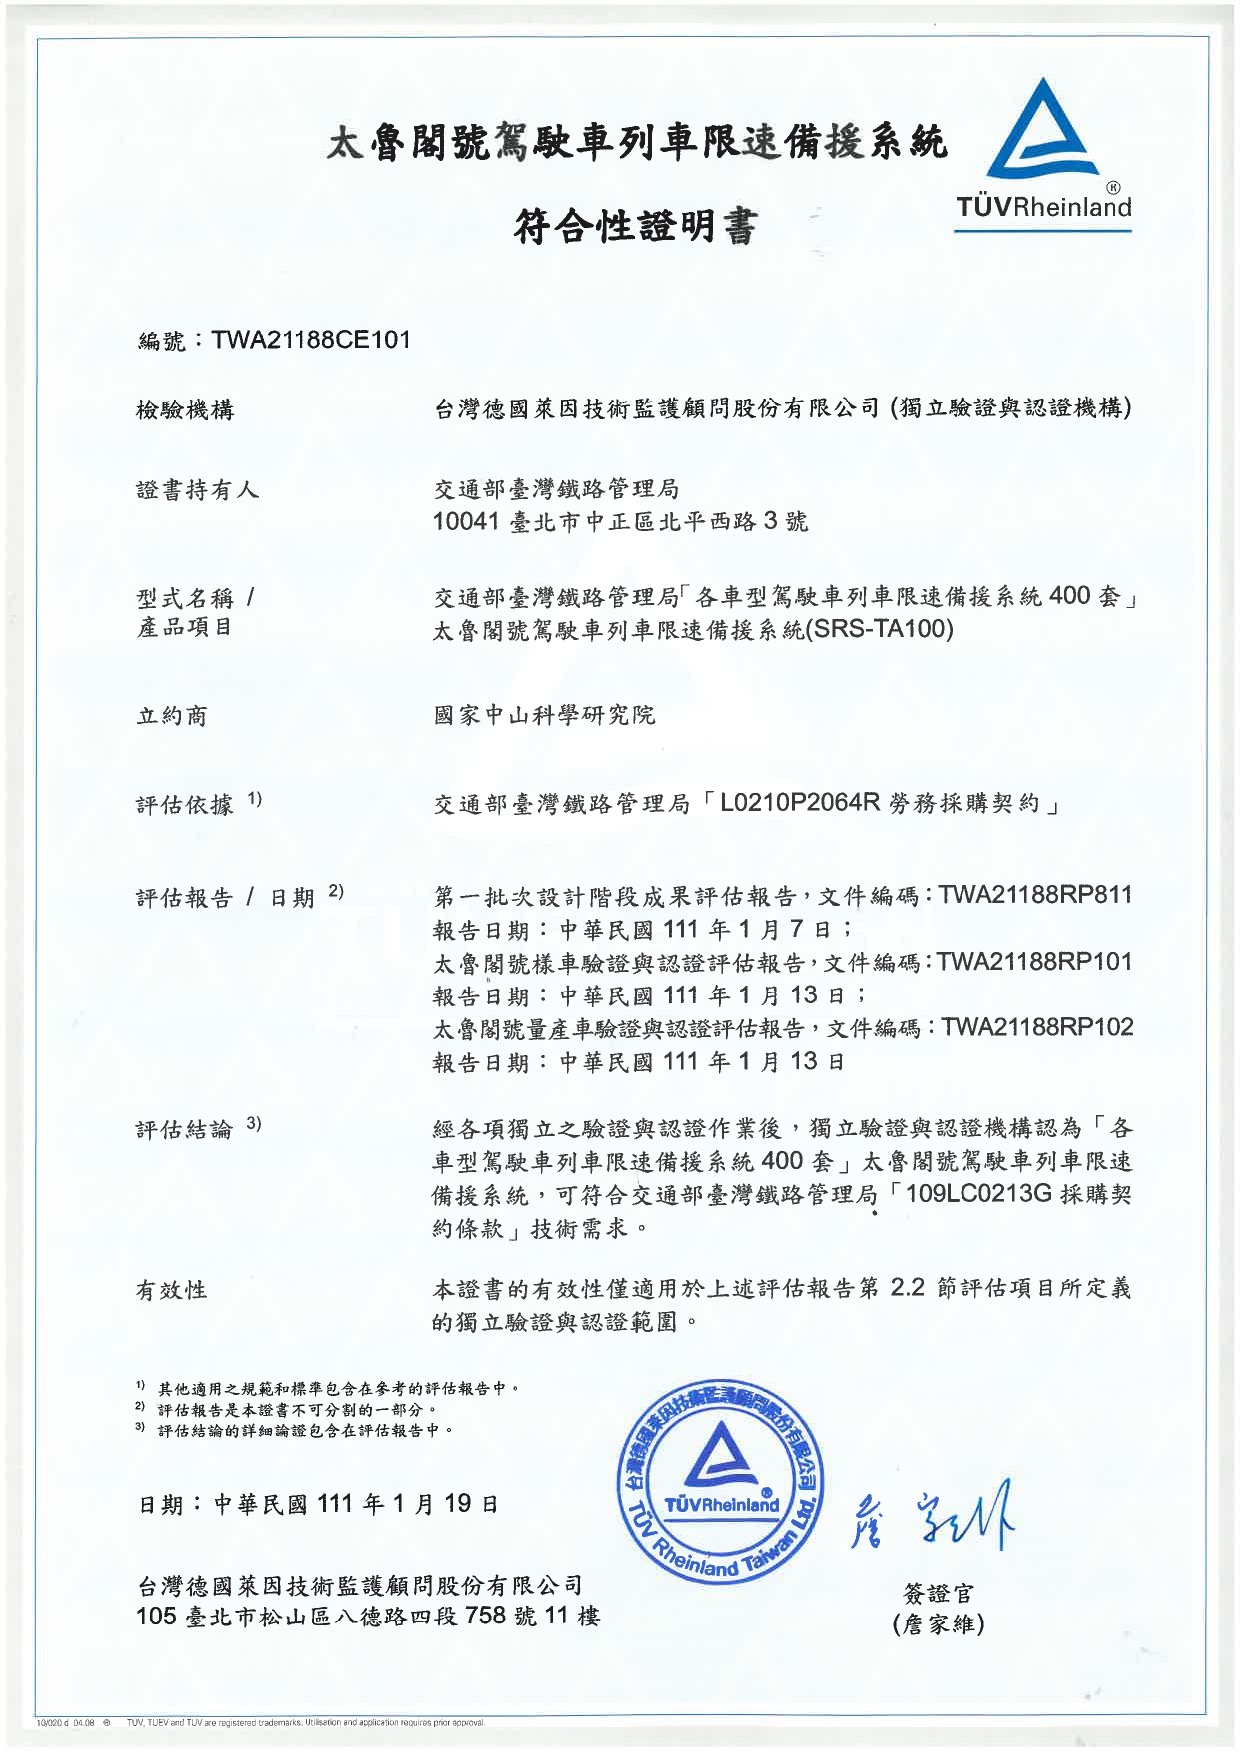 中科院電子所普悠瑪號、太魯閣號共52套系統，獲頒台灣德國萊因公司第三方驗證與認證符合性證明書